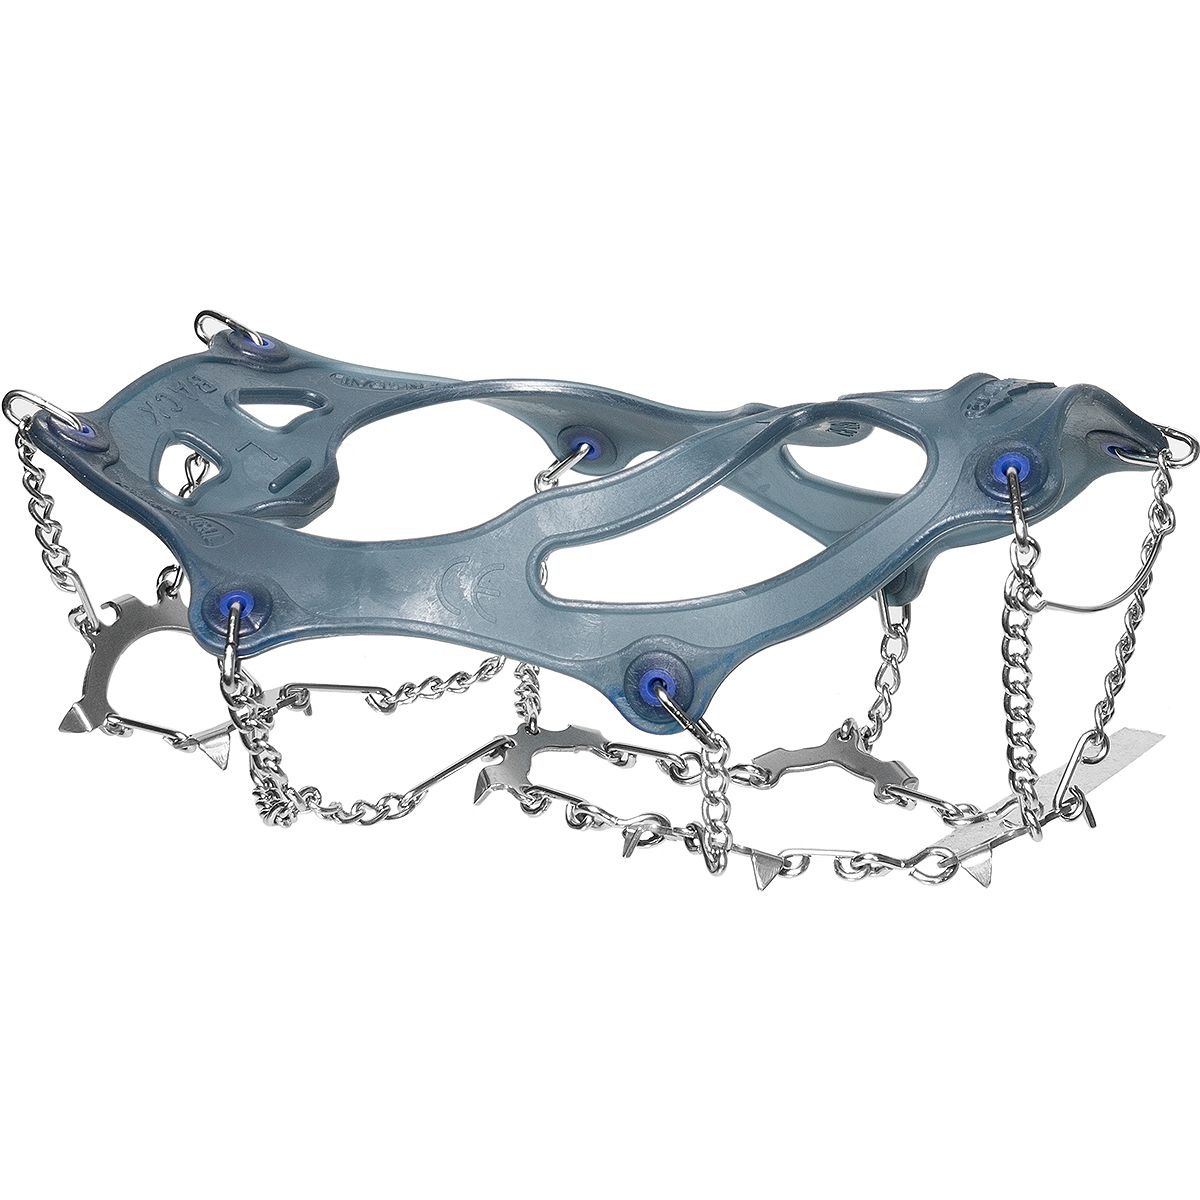 Snowline Spikes Chainsen Pro Crampon L navy/blue